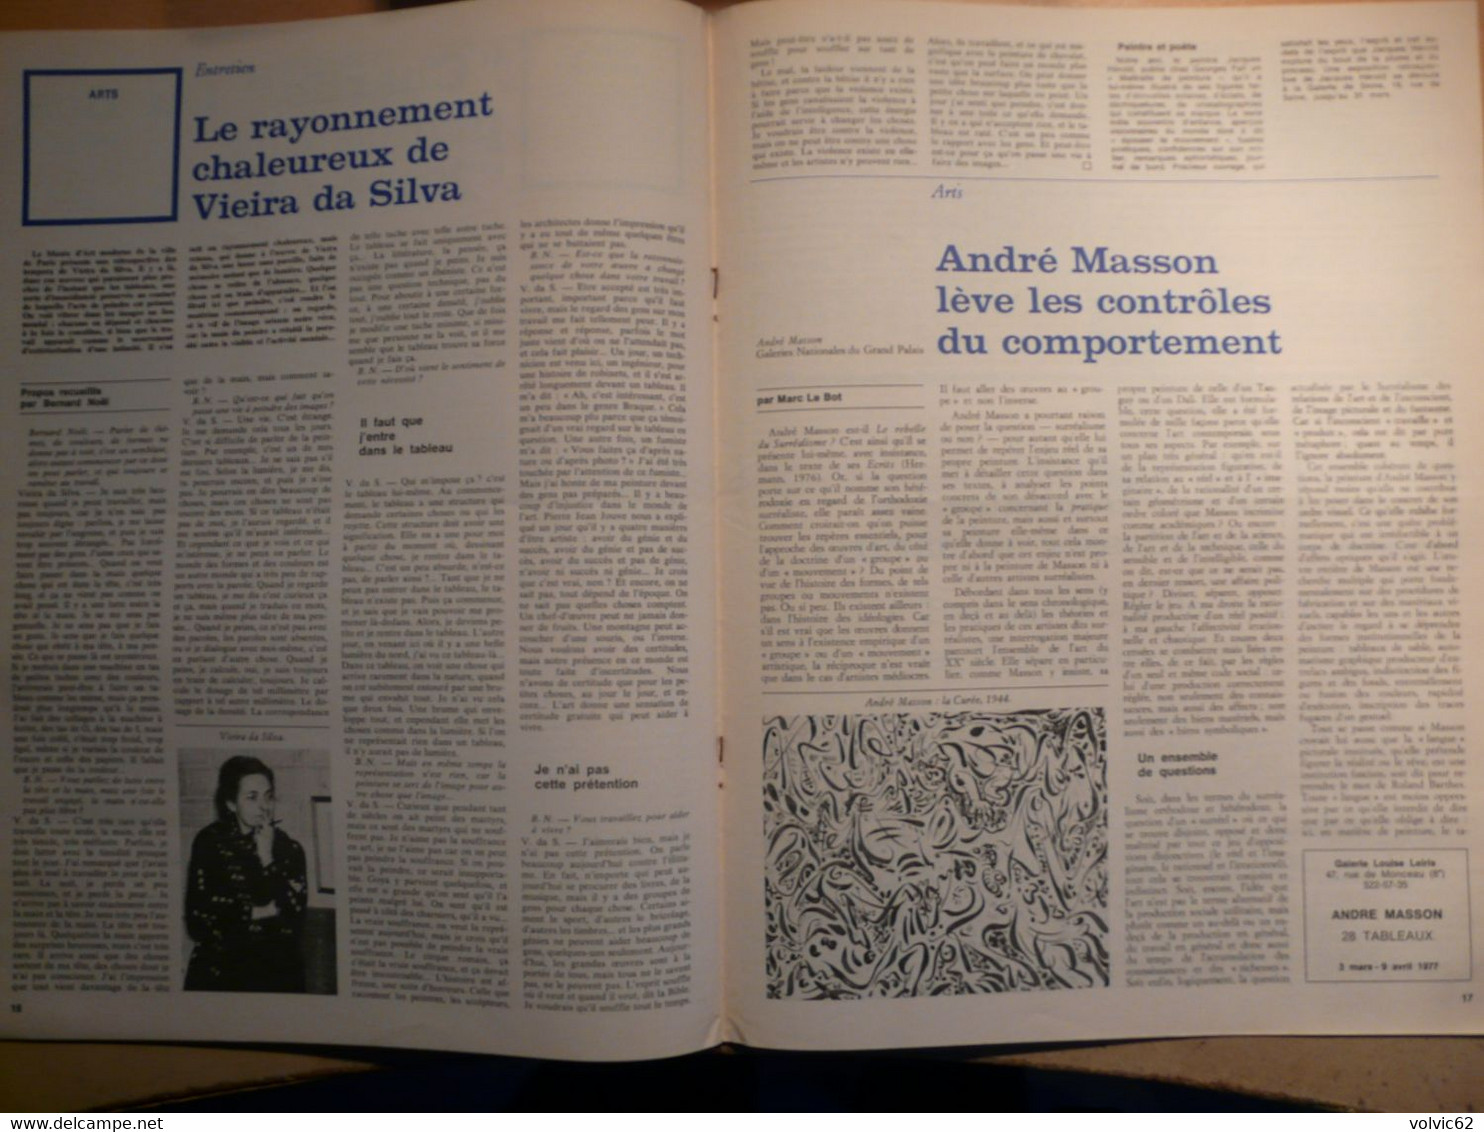 La Quinzaine littéraire 252 1977 Malraux Michel serres Tournier Henry James Ernst Bloch pierre monatte Sciascia da silva